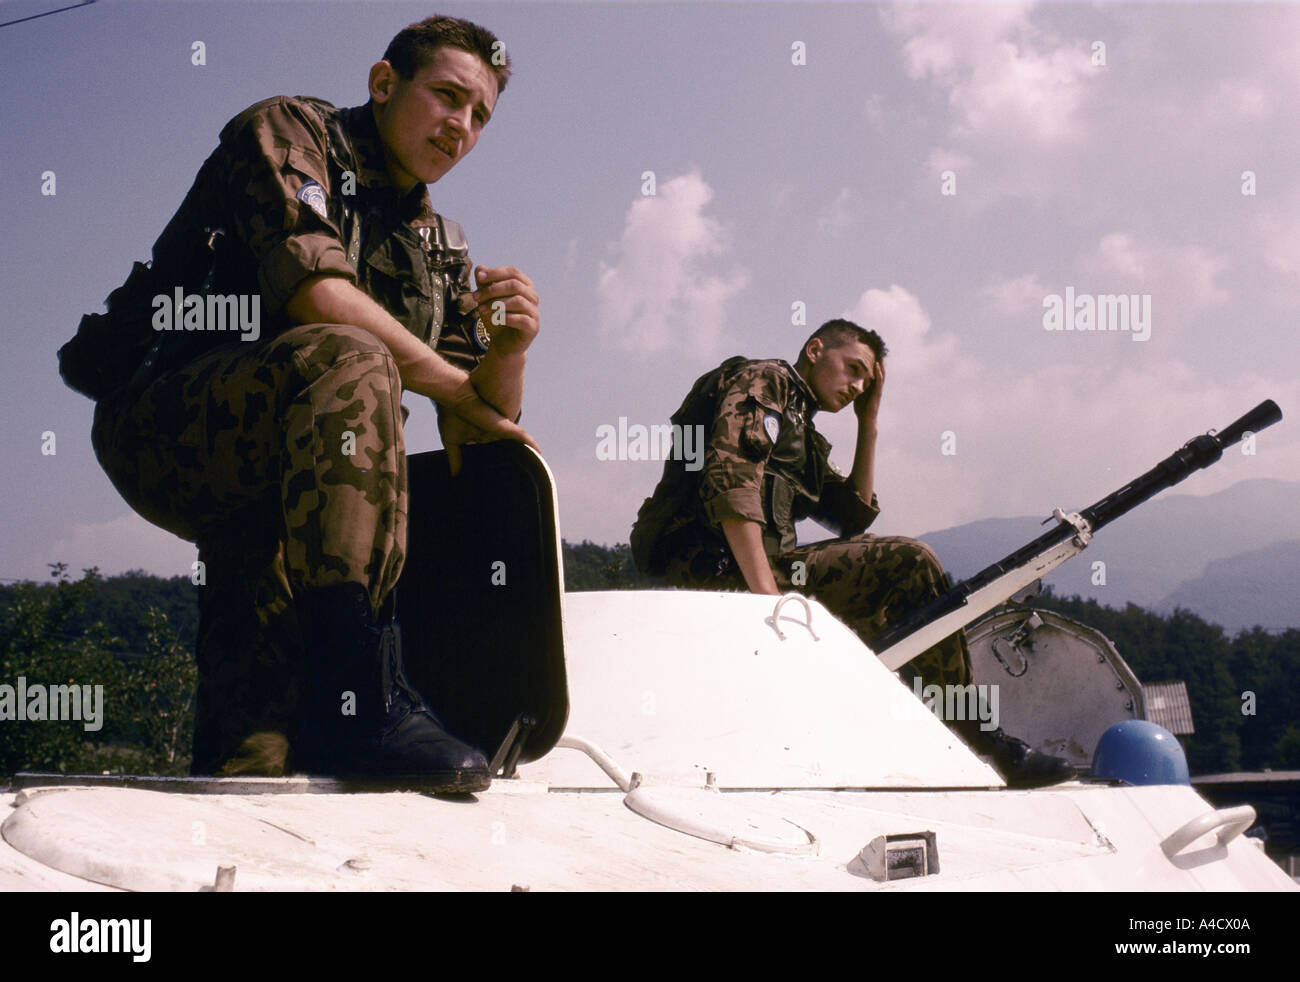 In der Nähe von Lukavica Kaserne, Sarajevo, Bosnien & Herzegowina. Russische UN-Truppen überwachen bosnischen und serbischen Artilleriestellungen. Stockfoto